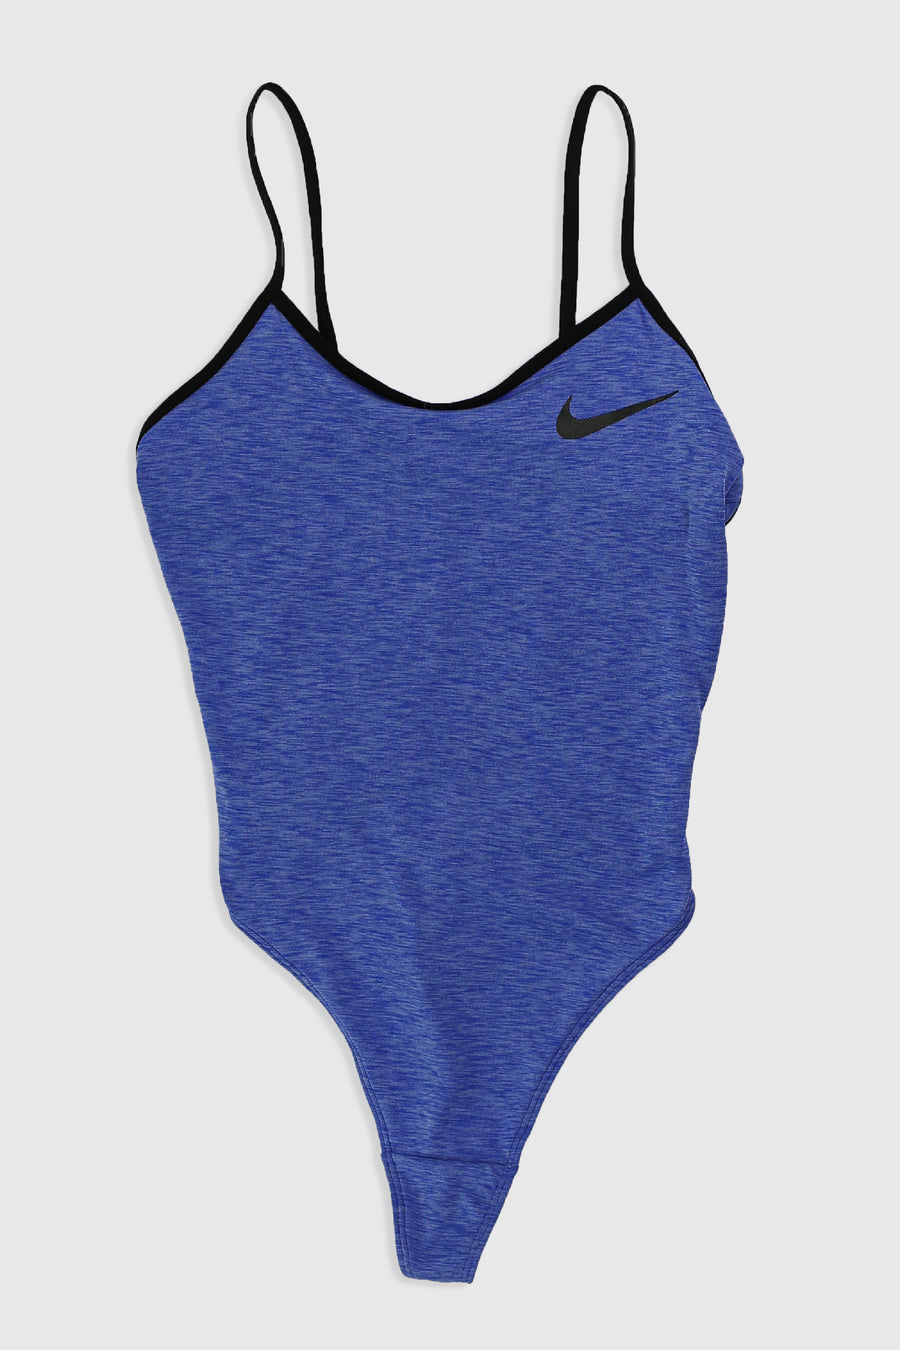 Nike bodysuit